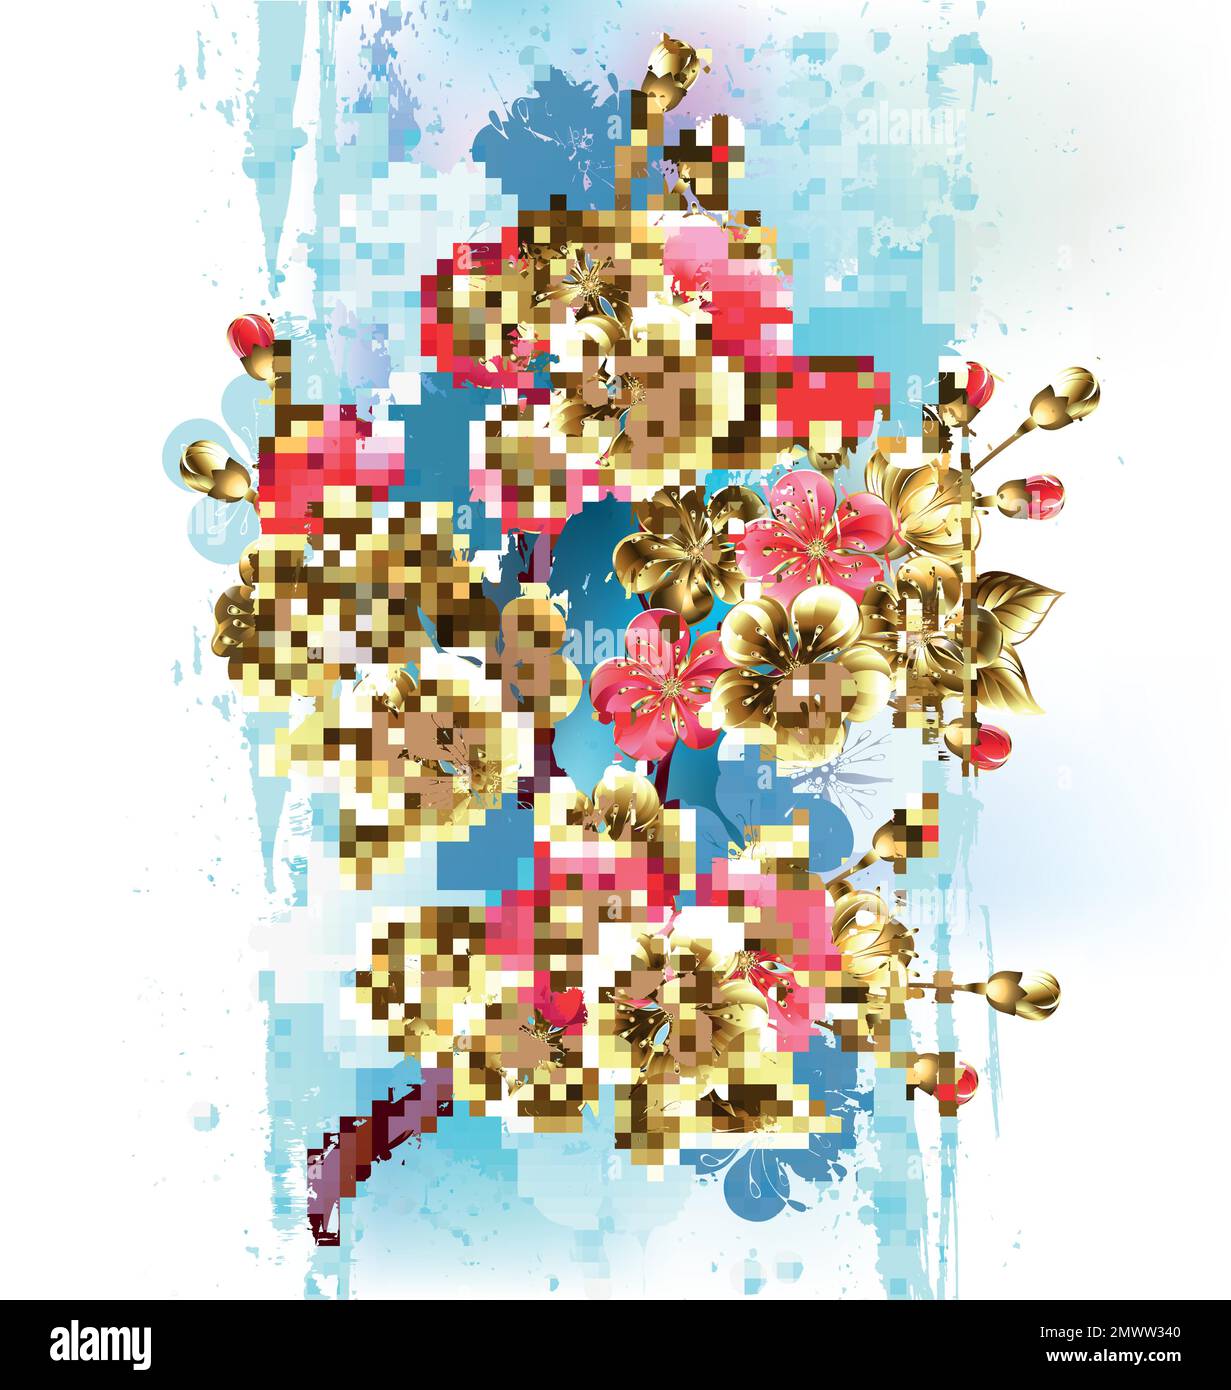 Disegnato artisticamente, ramo di fiori di ciliegio dorato e rosso su sfondo pittoresco e testurizzato, dipinto con vernice blu e lilla. sakura d'oro. Illustrazione Vettoriale